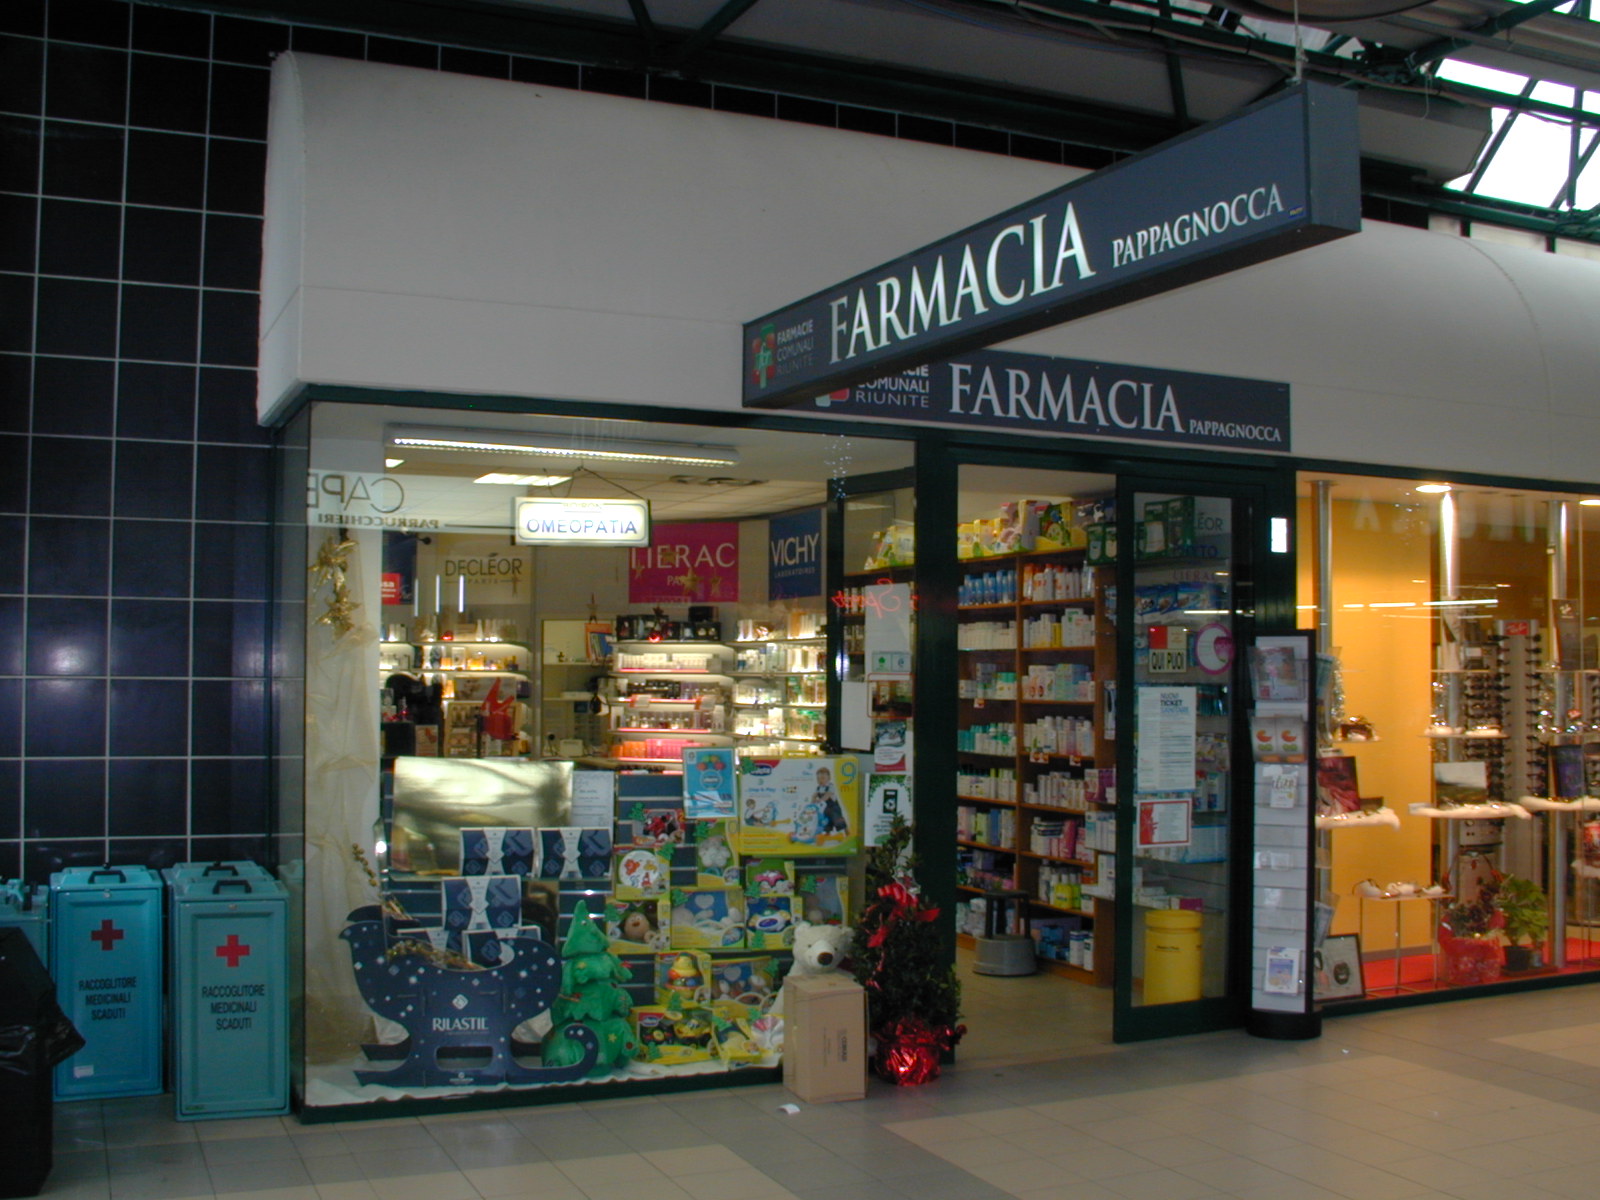 Farmacia Pappagnocca